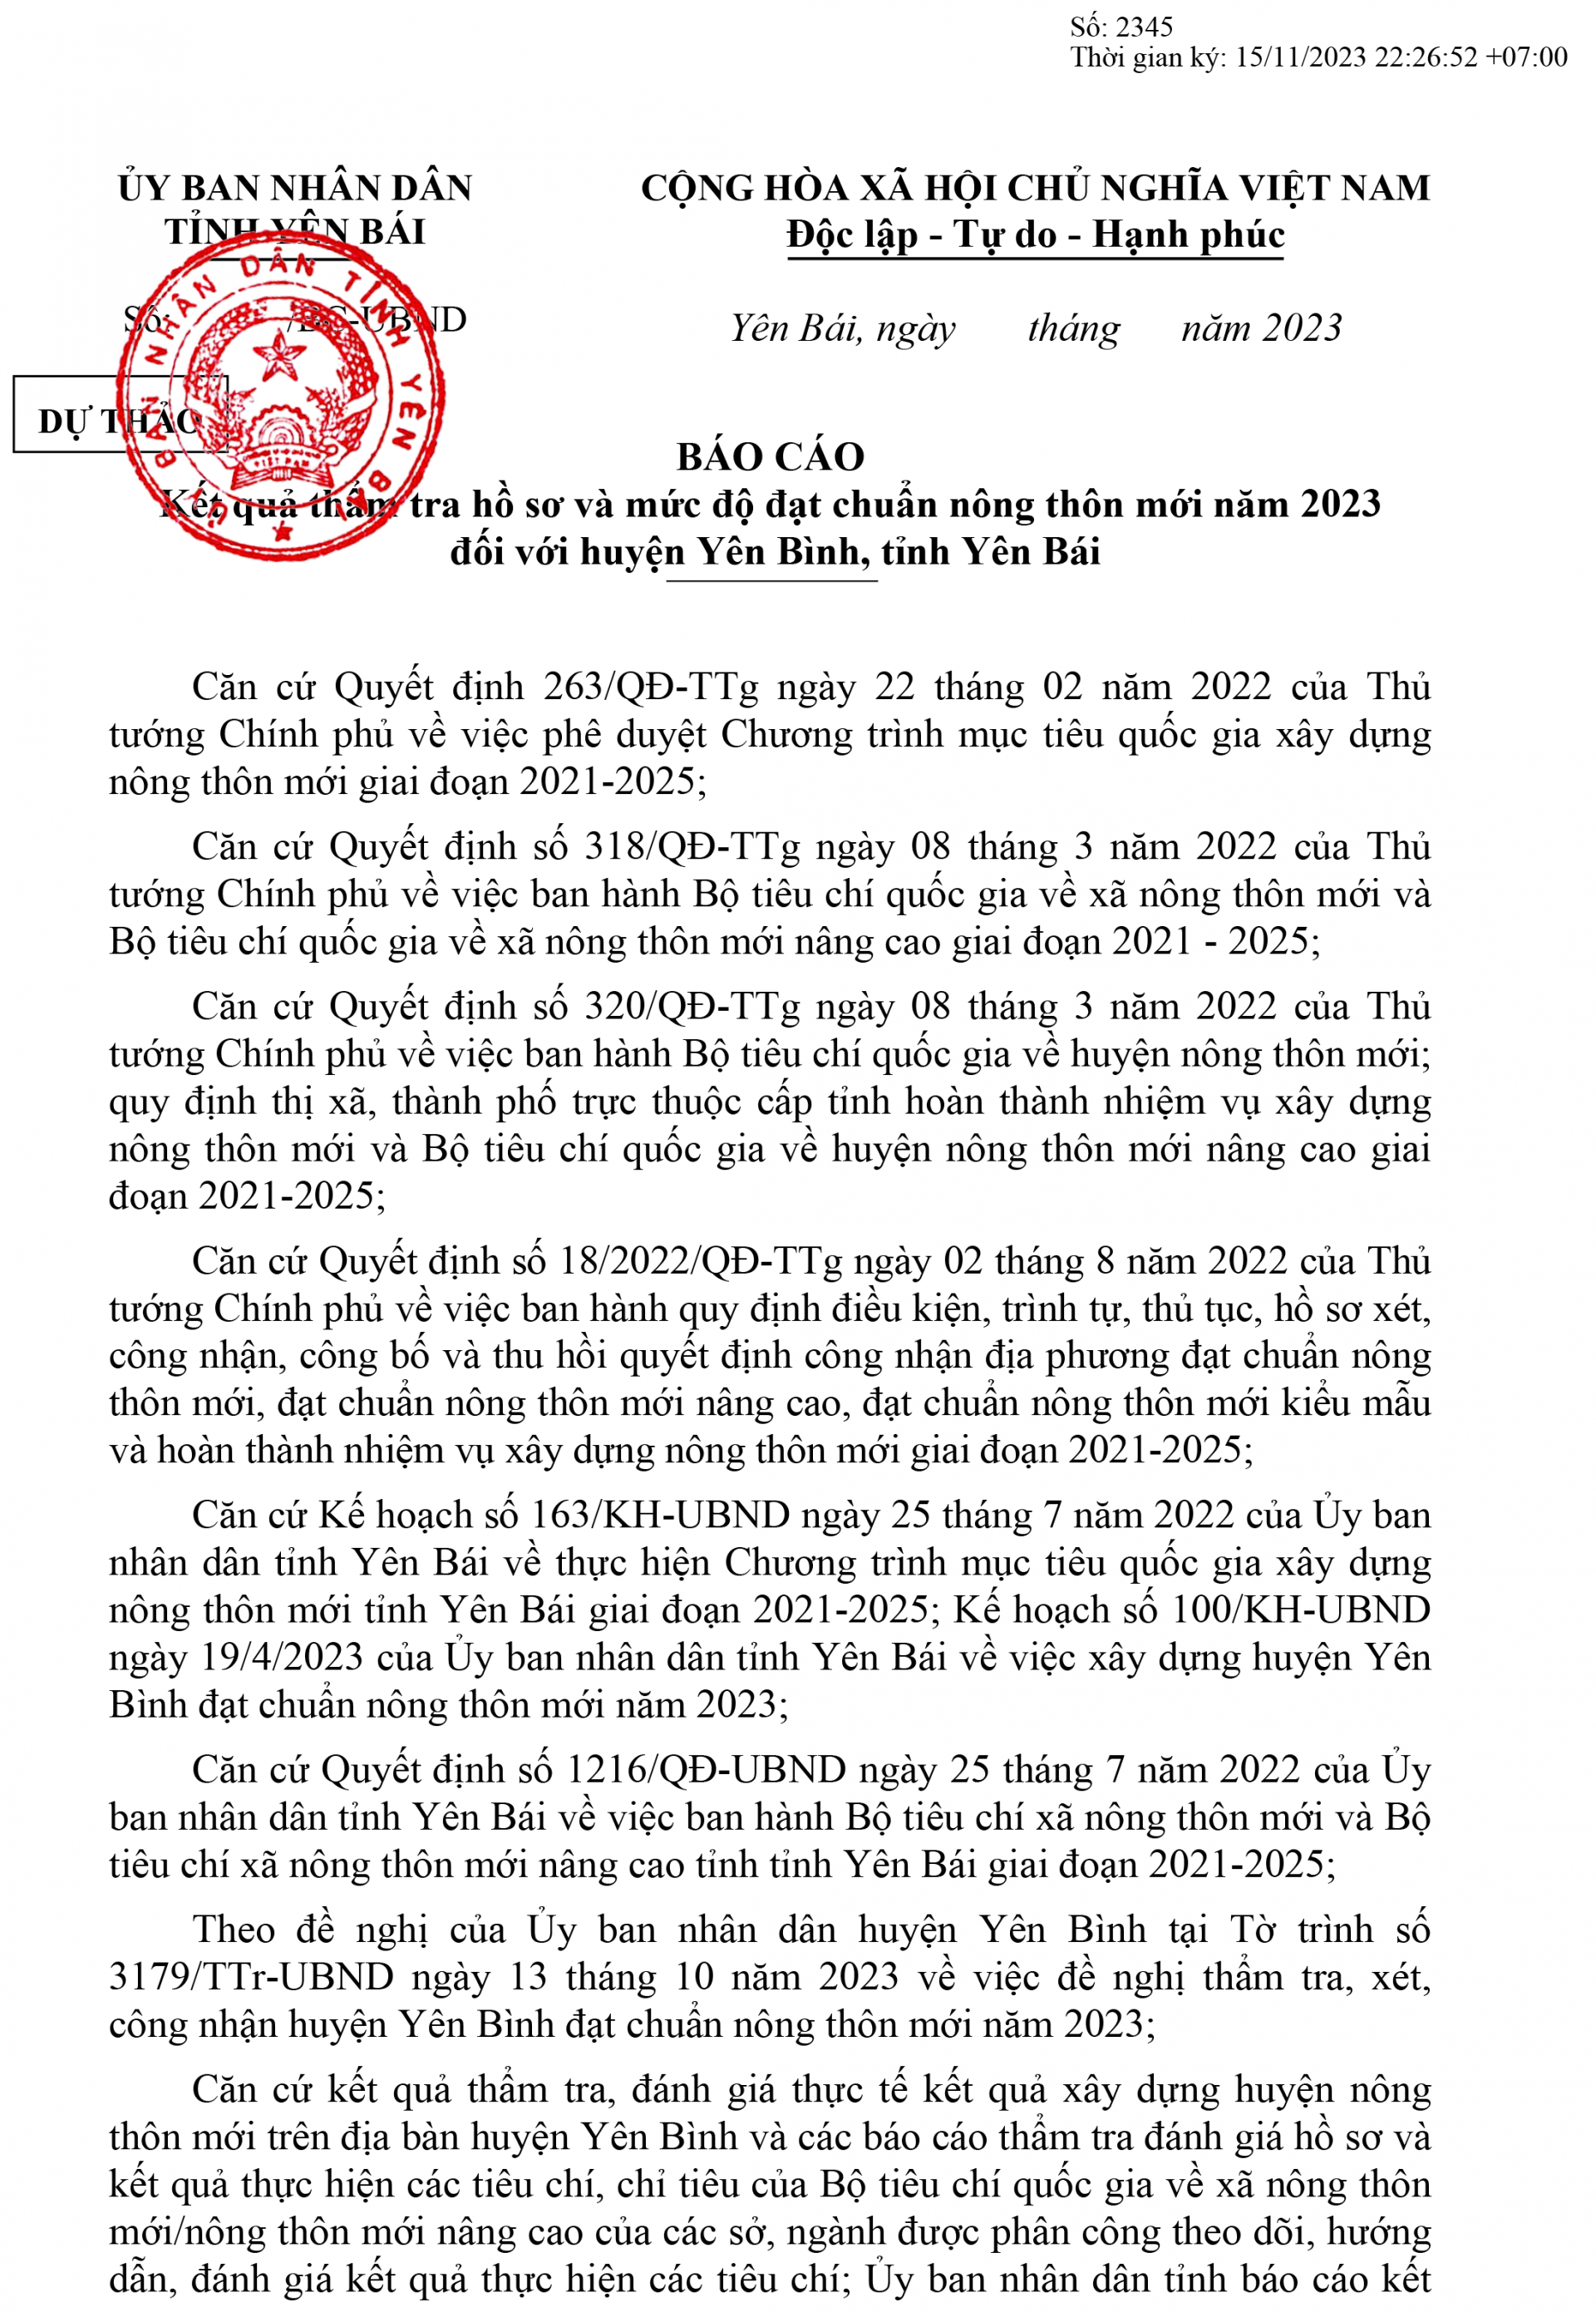 UBND tỉnh lấy ý kiến nhân dân về kết quả thẩm tra và mức độ đạt chuẩn NTM năm 2023 đối với huyện Yên Bình